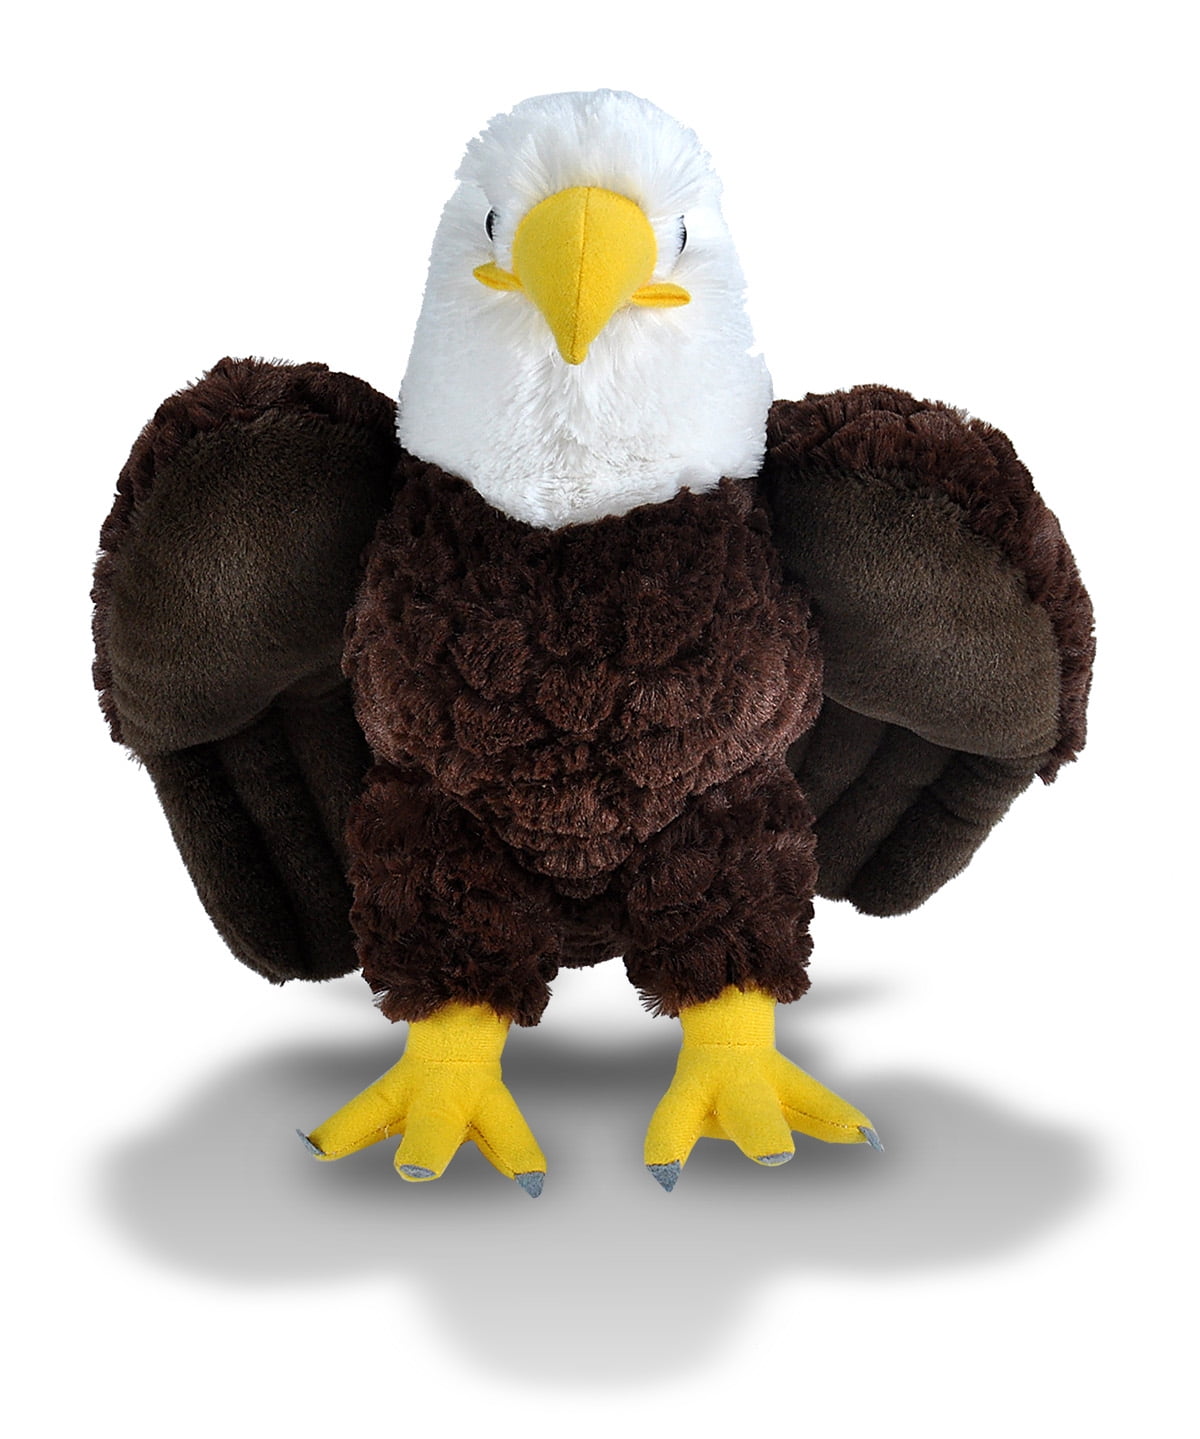 stuffed bald eagle